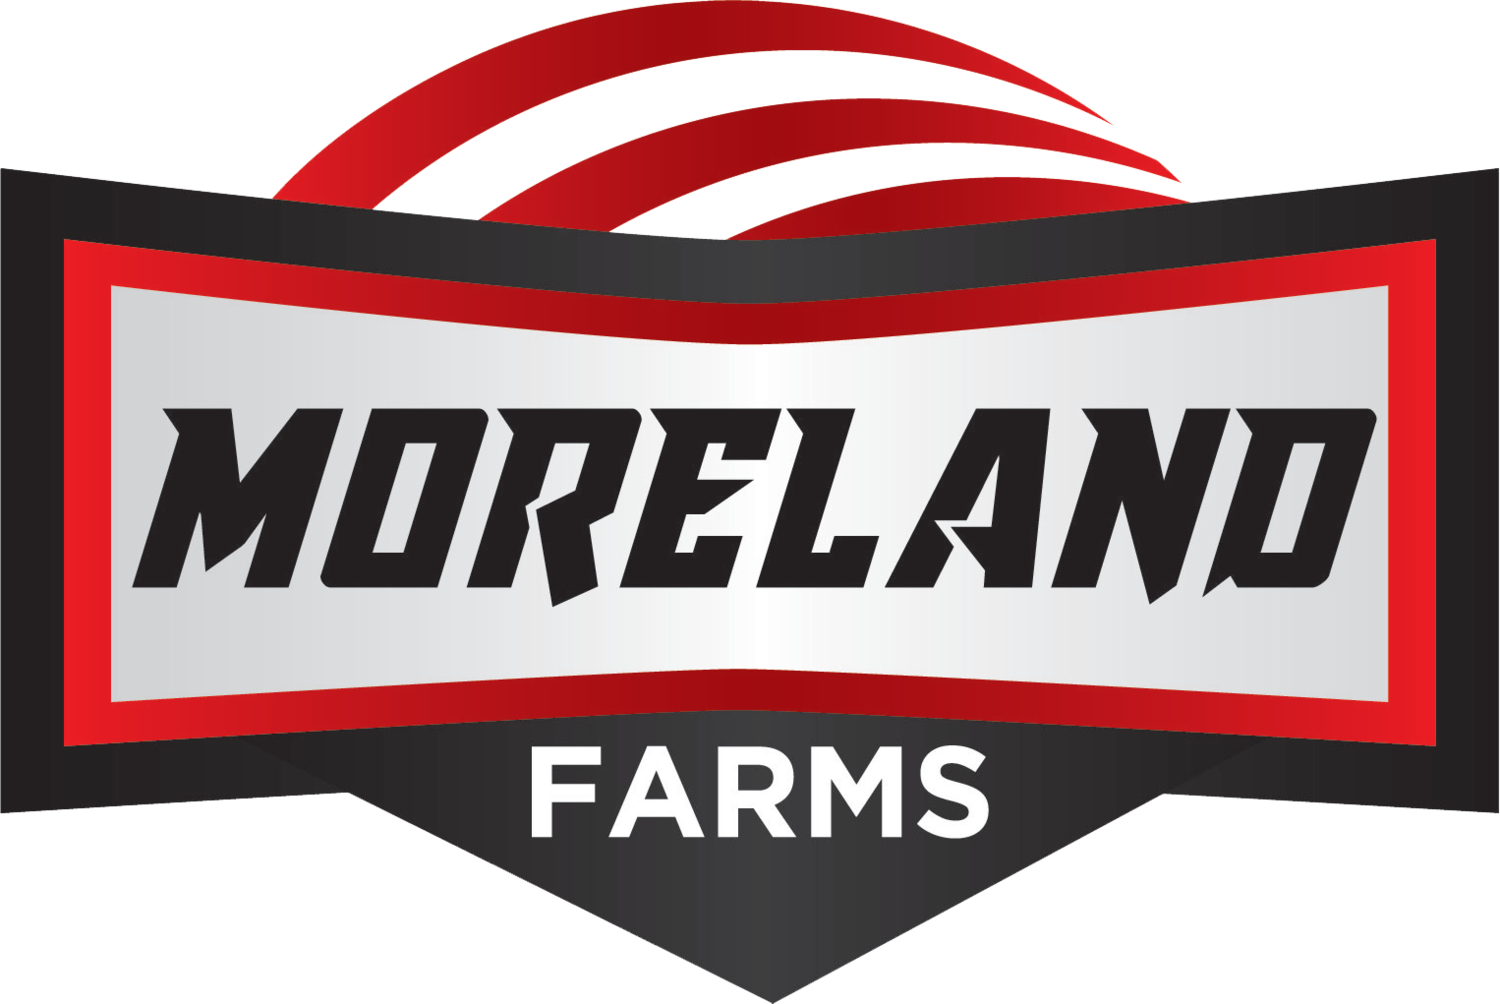 Moreland Farms 